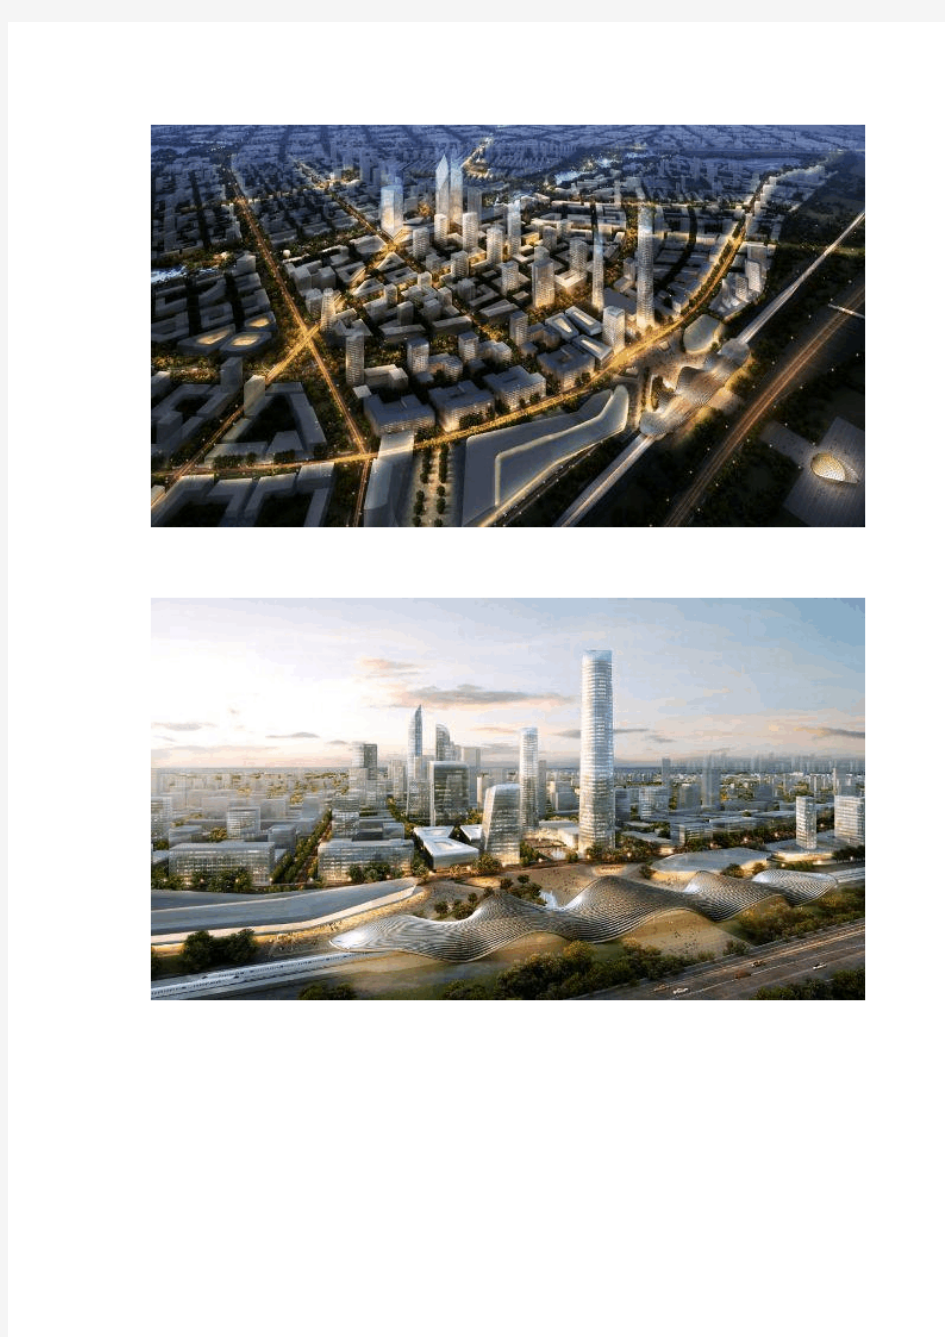 中国,北京,环渤海创新城总体规划中标方案SOM建筑设计事务所